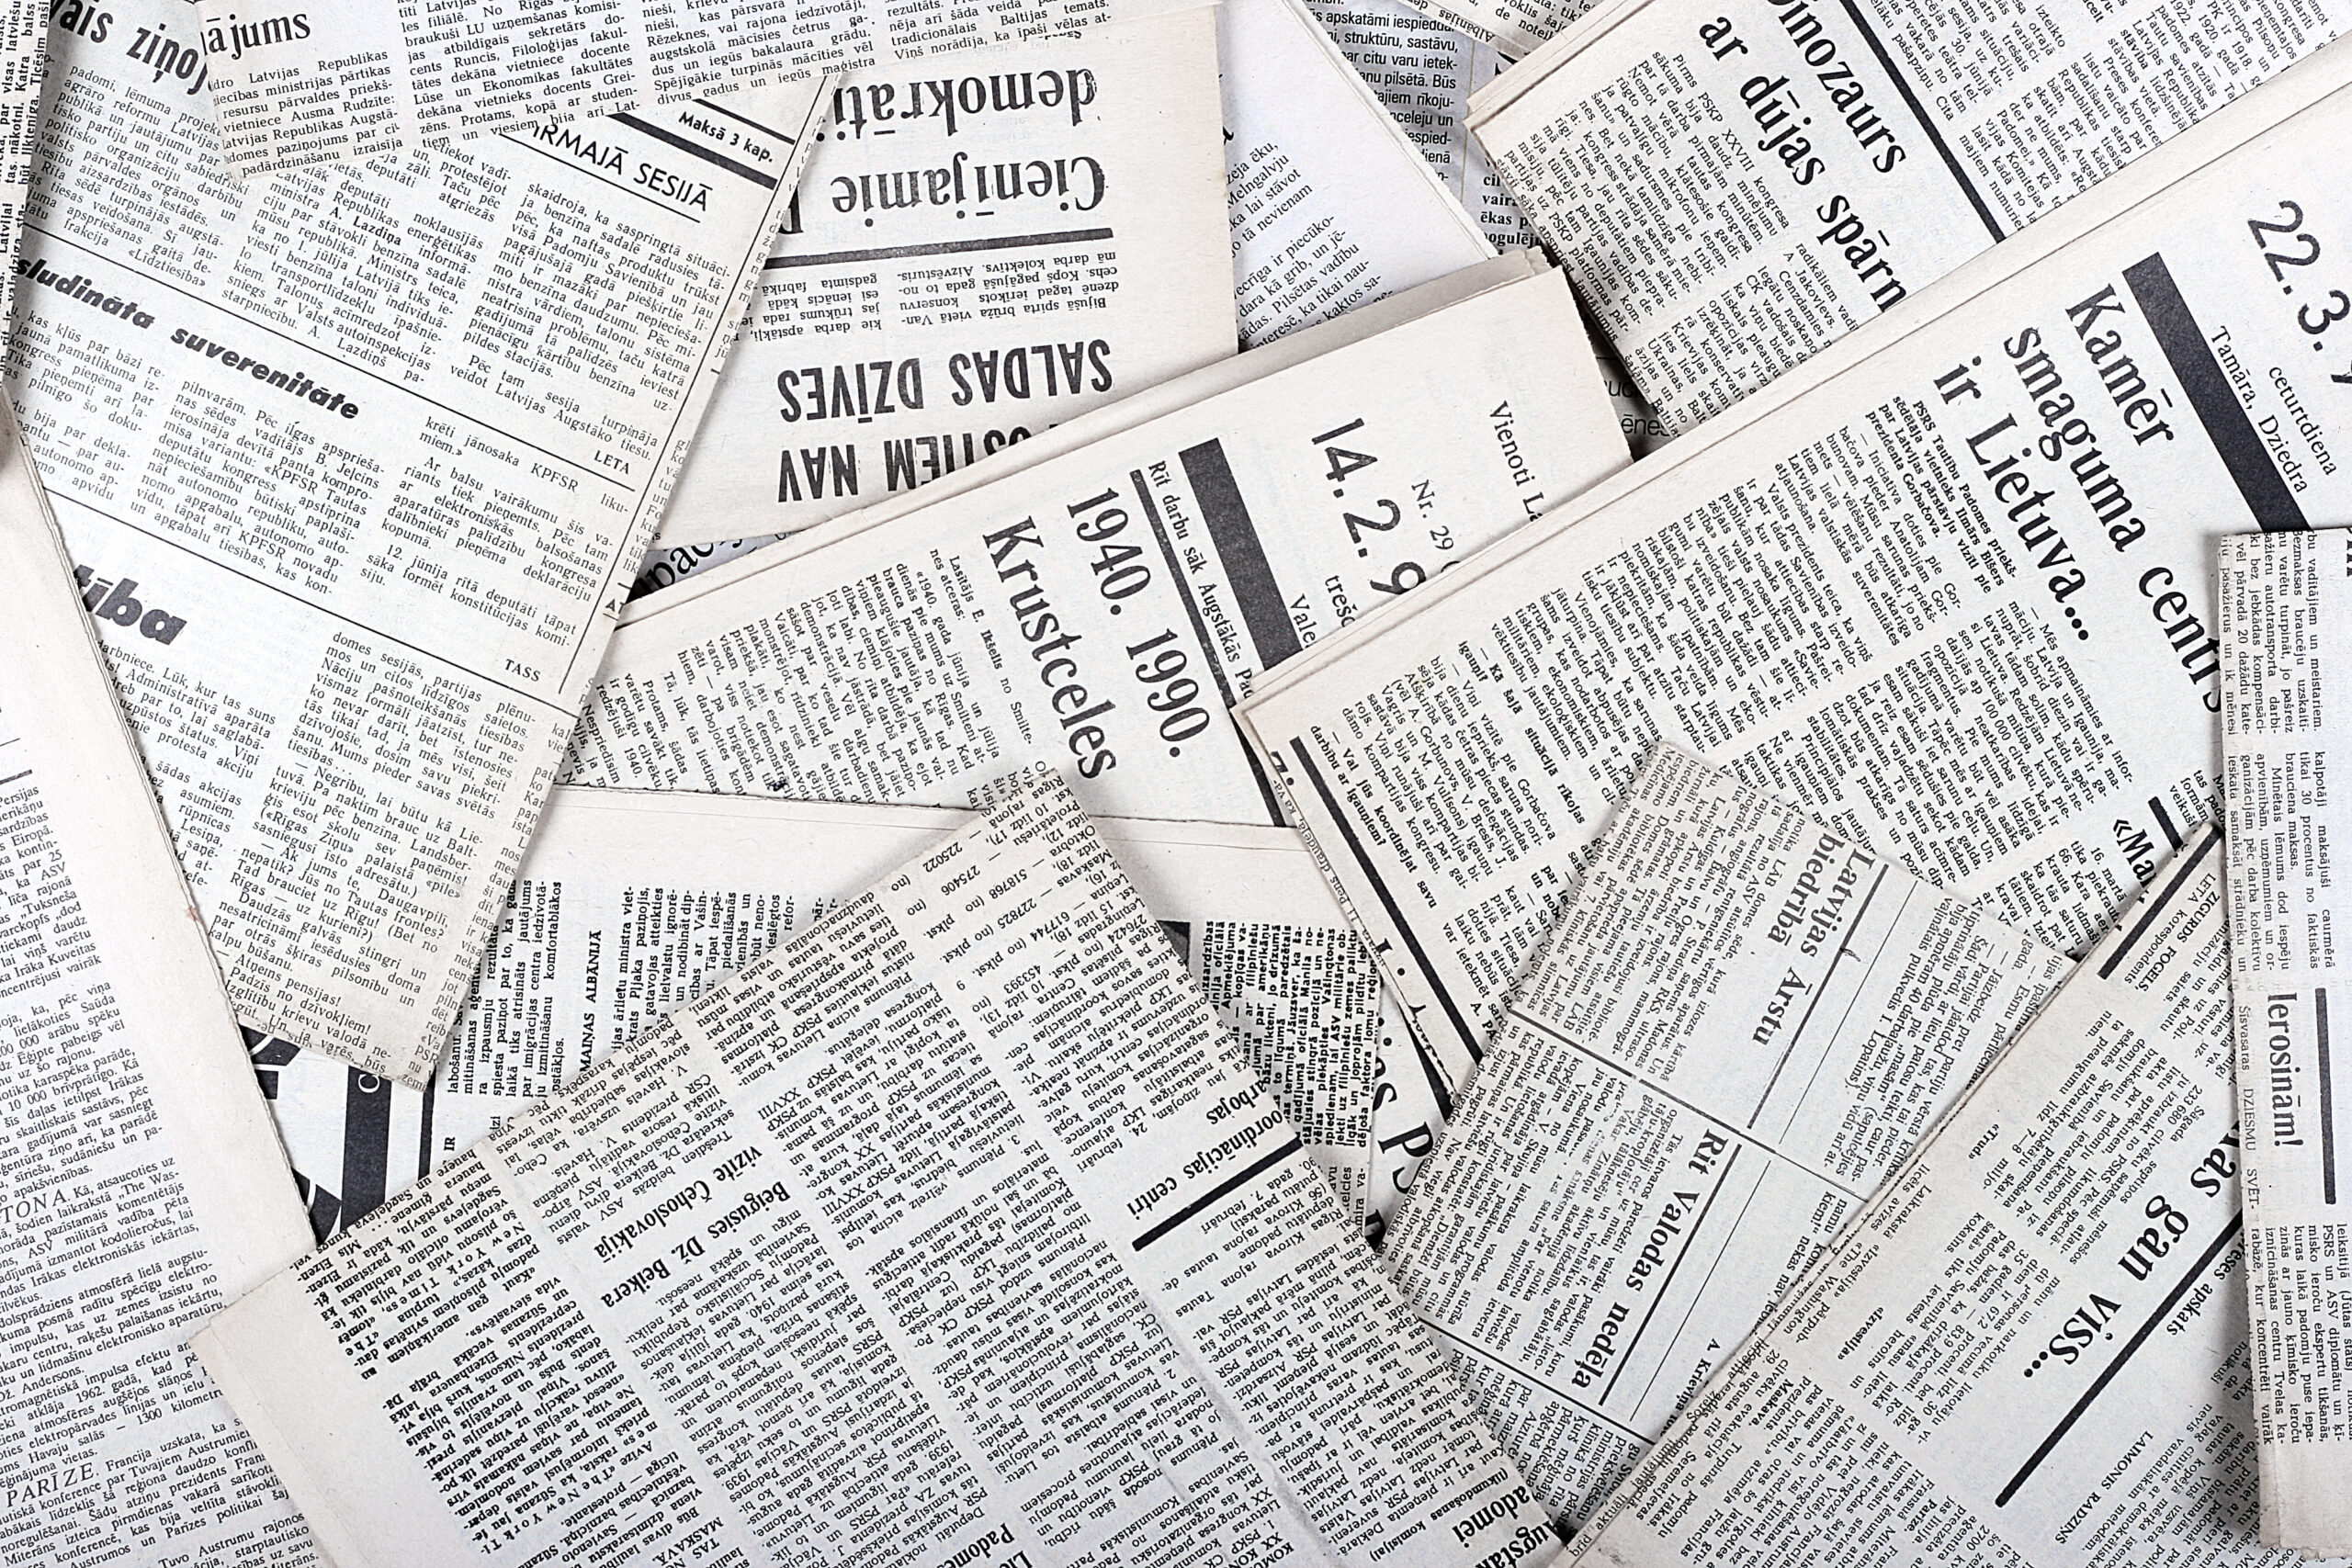 Zeitungen zusammengehäuft im Chaos